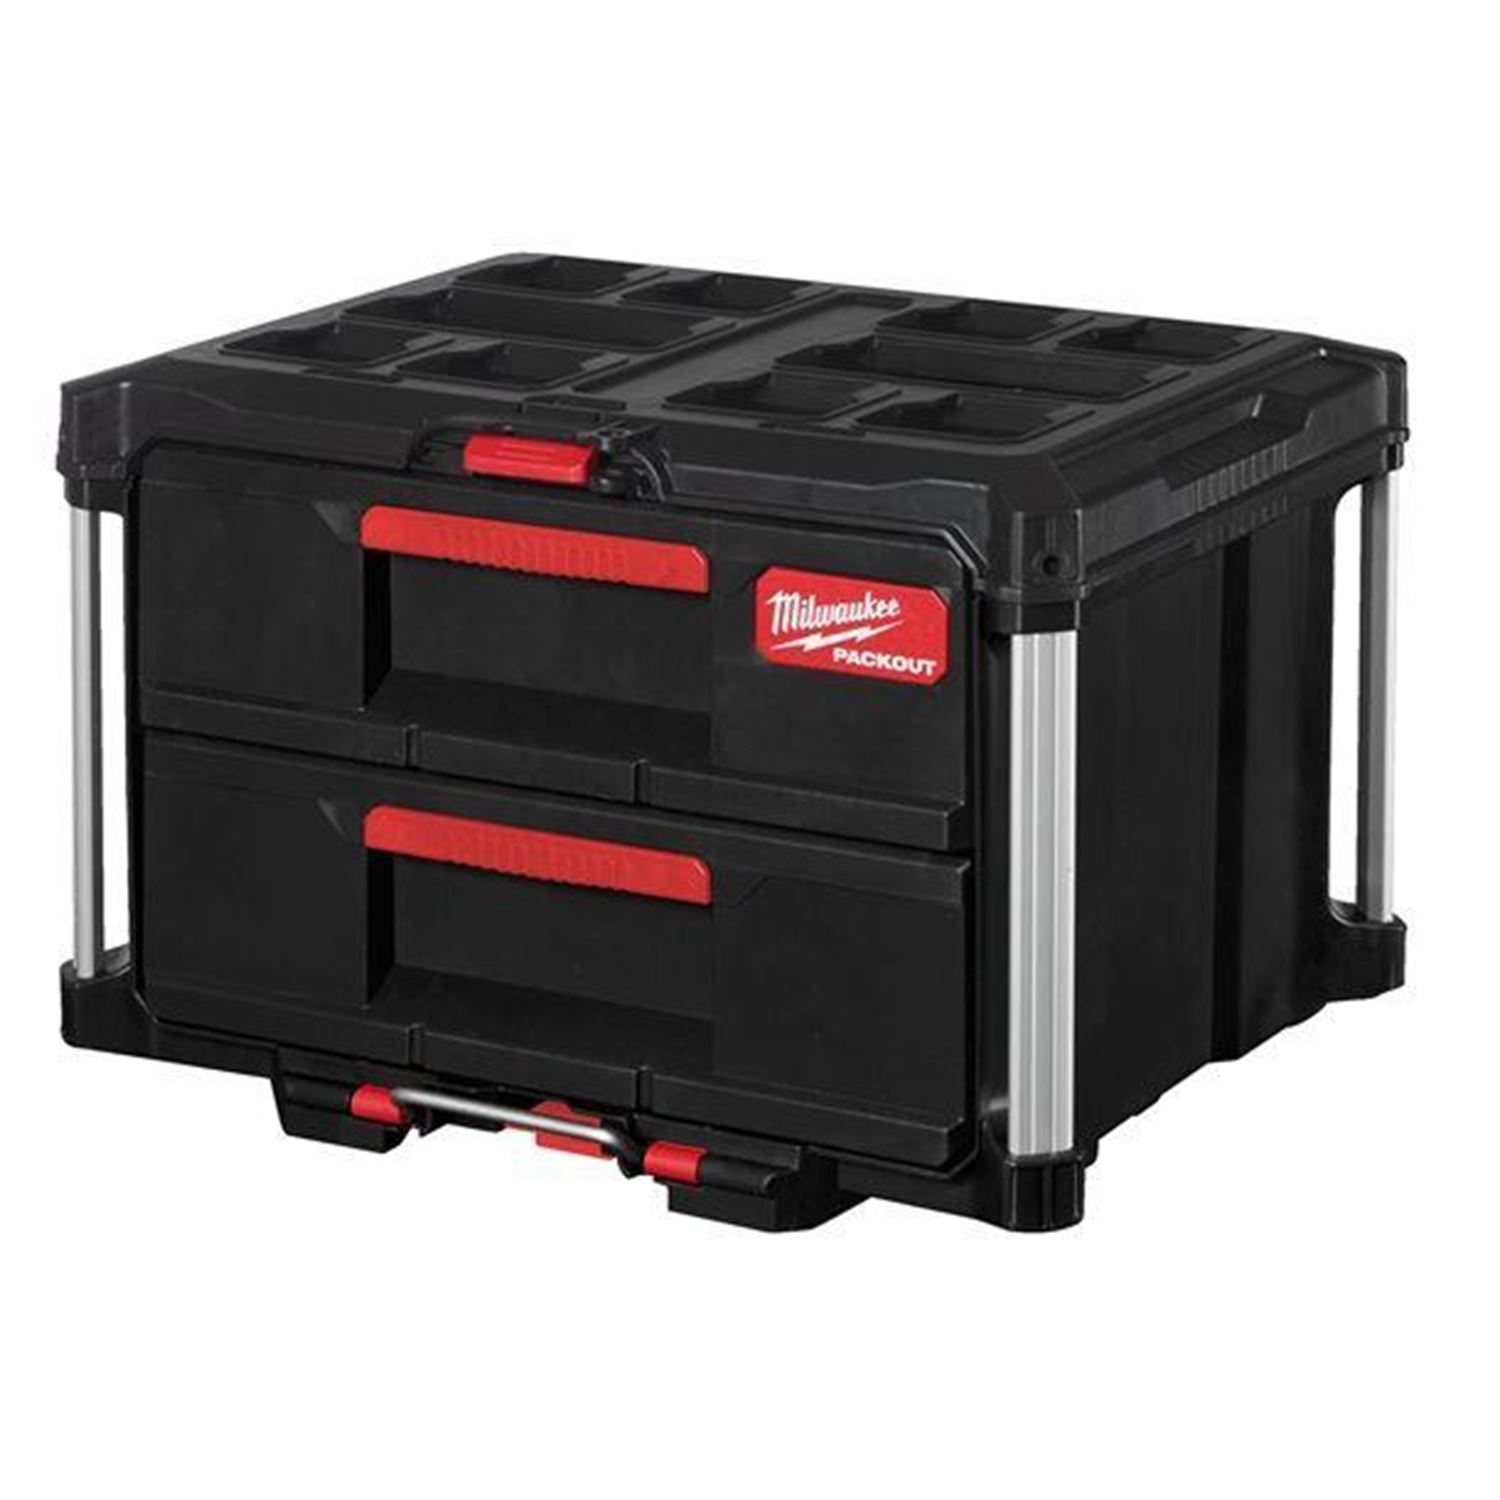 Снимка на Packout кутия за инструменти с 2 чекмеджета,Milwaukee,4932472129